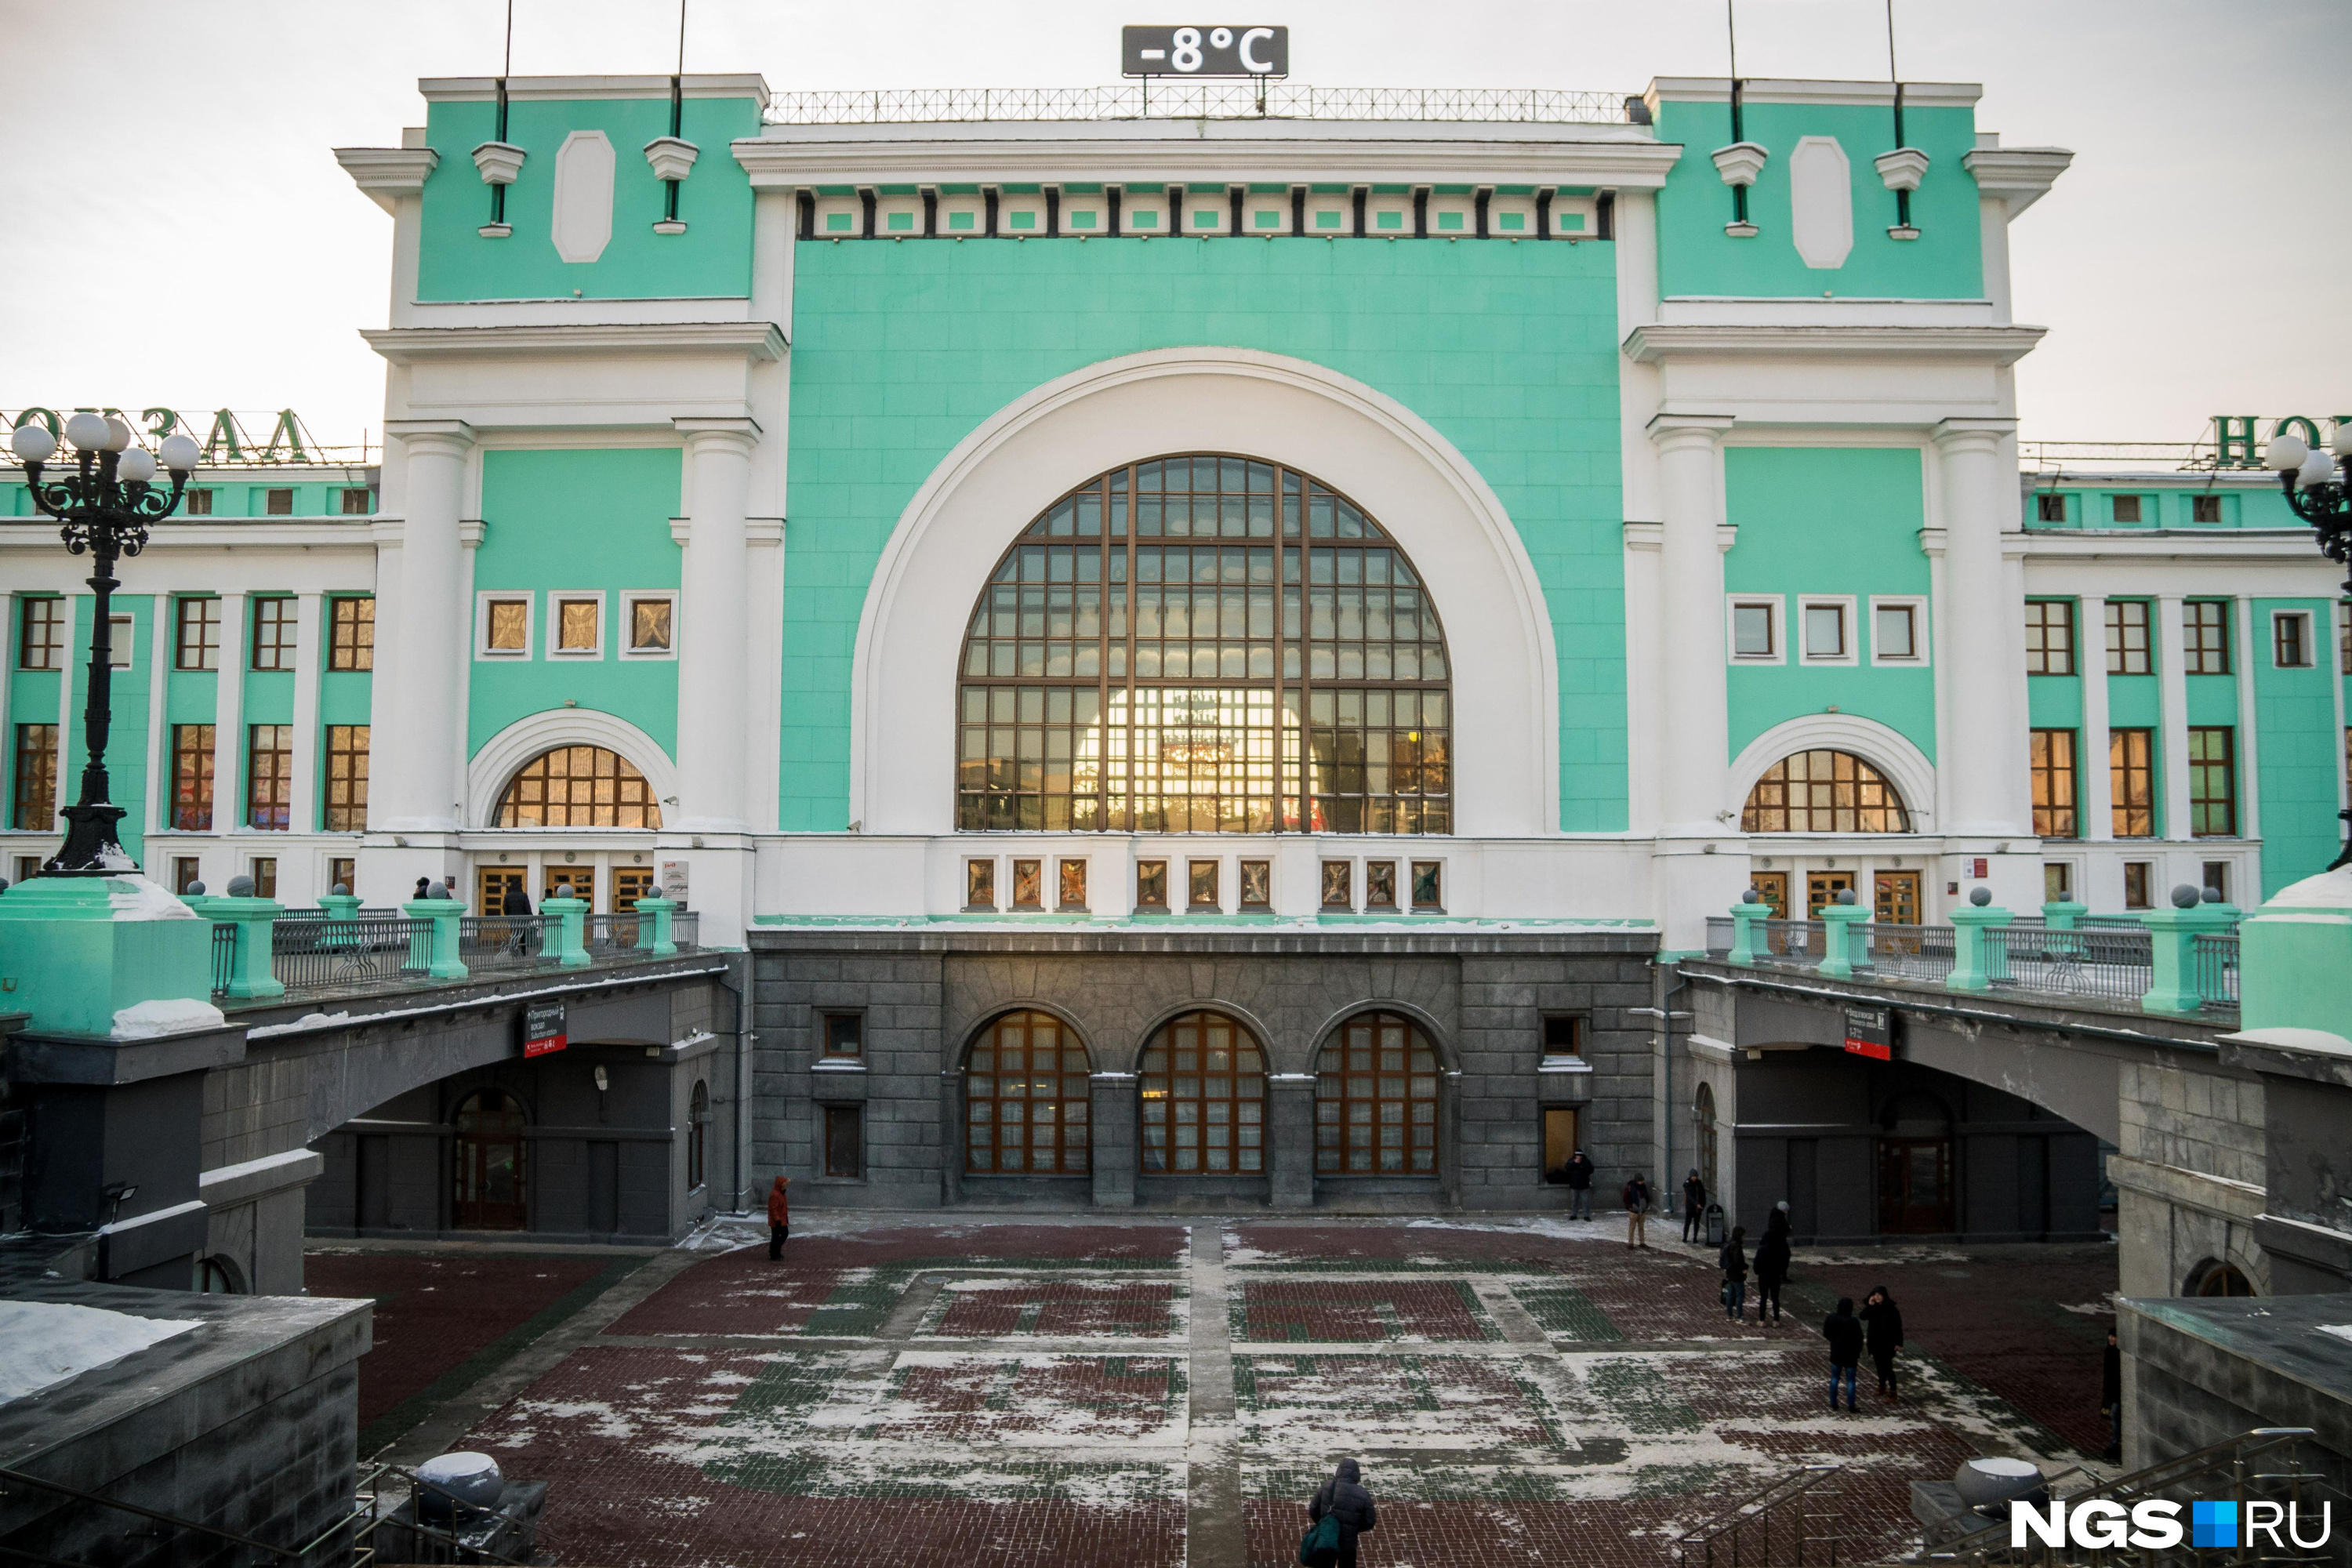 Новосибирский вокзал главный. Вокзал железнодорожной станции Новосибирск-главный. Новосибирский главный вокзал главный Новосибирск. Ж Д вокзал Новосибирск главный.